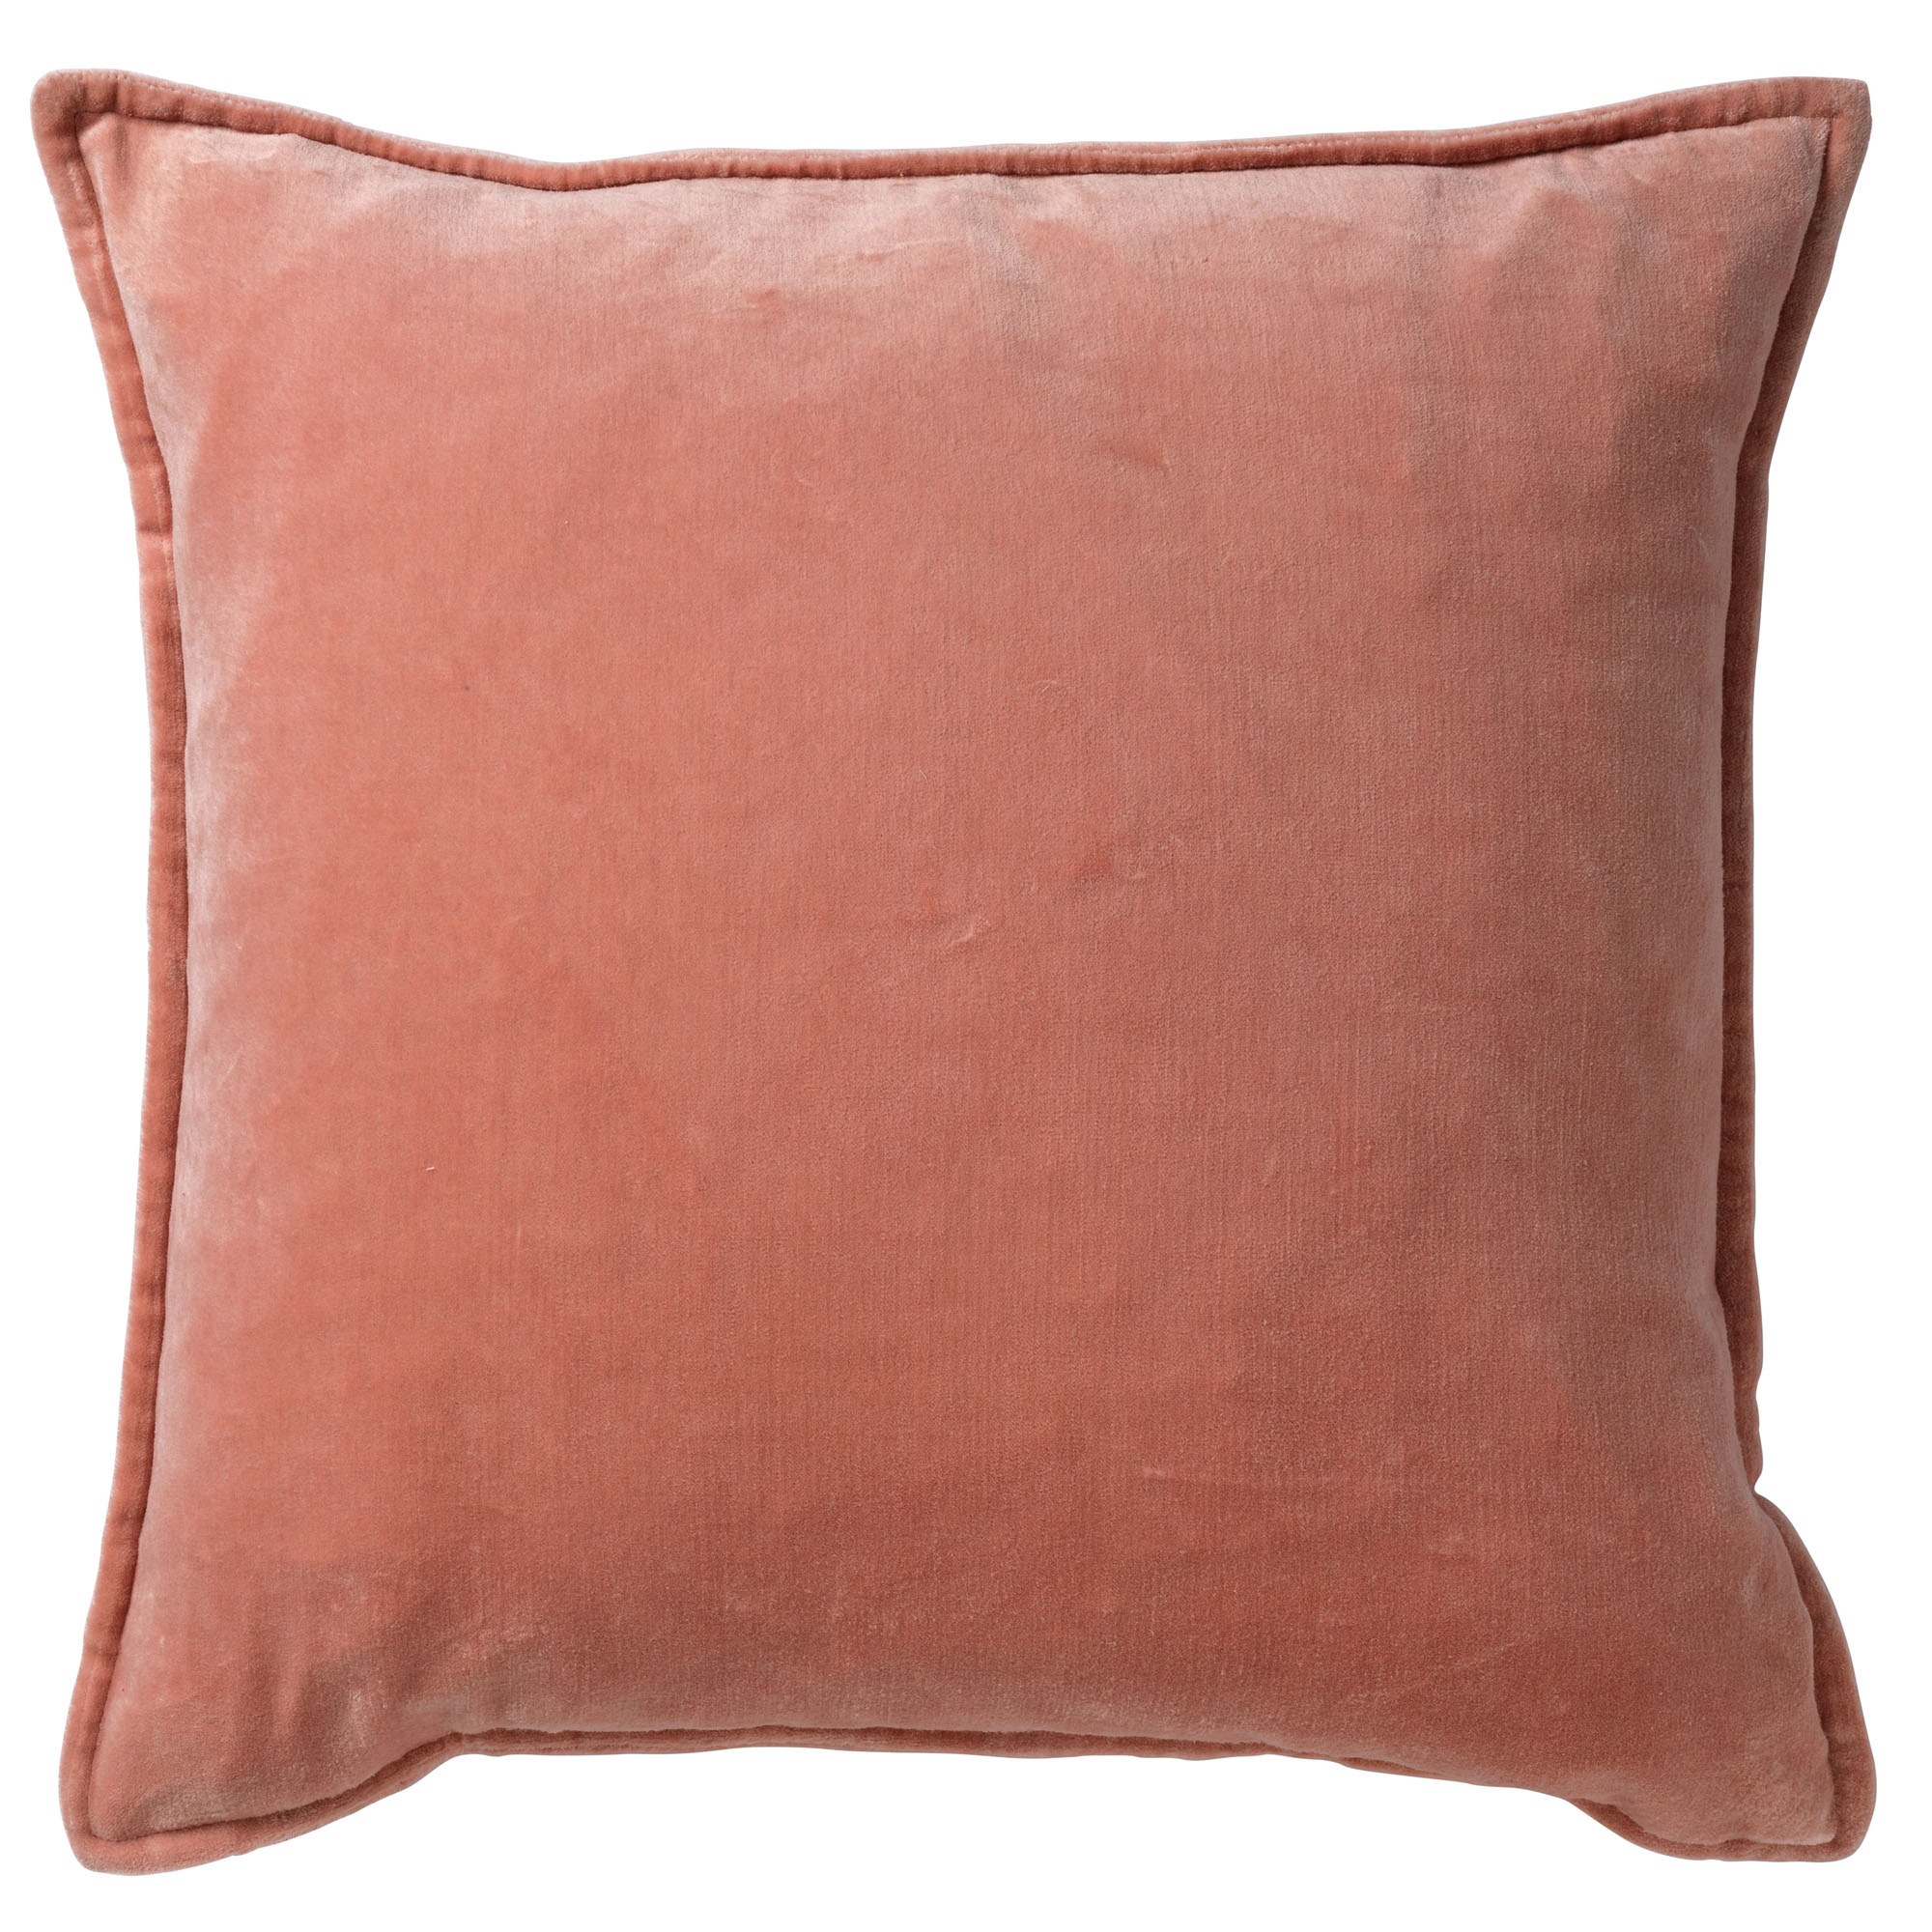 CAITH - Kussenhoes 50x50 cm - 100% katoen velvet - lekker zacht - Muted Clay - roze